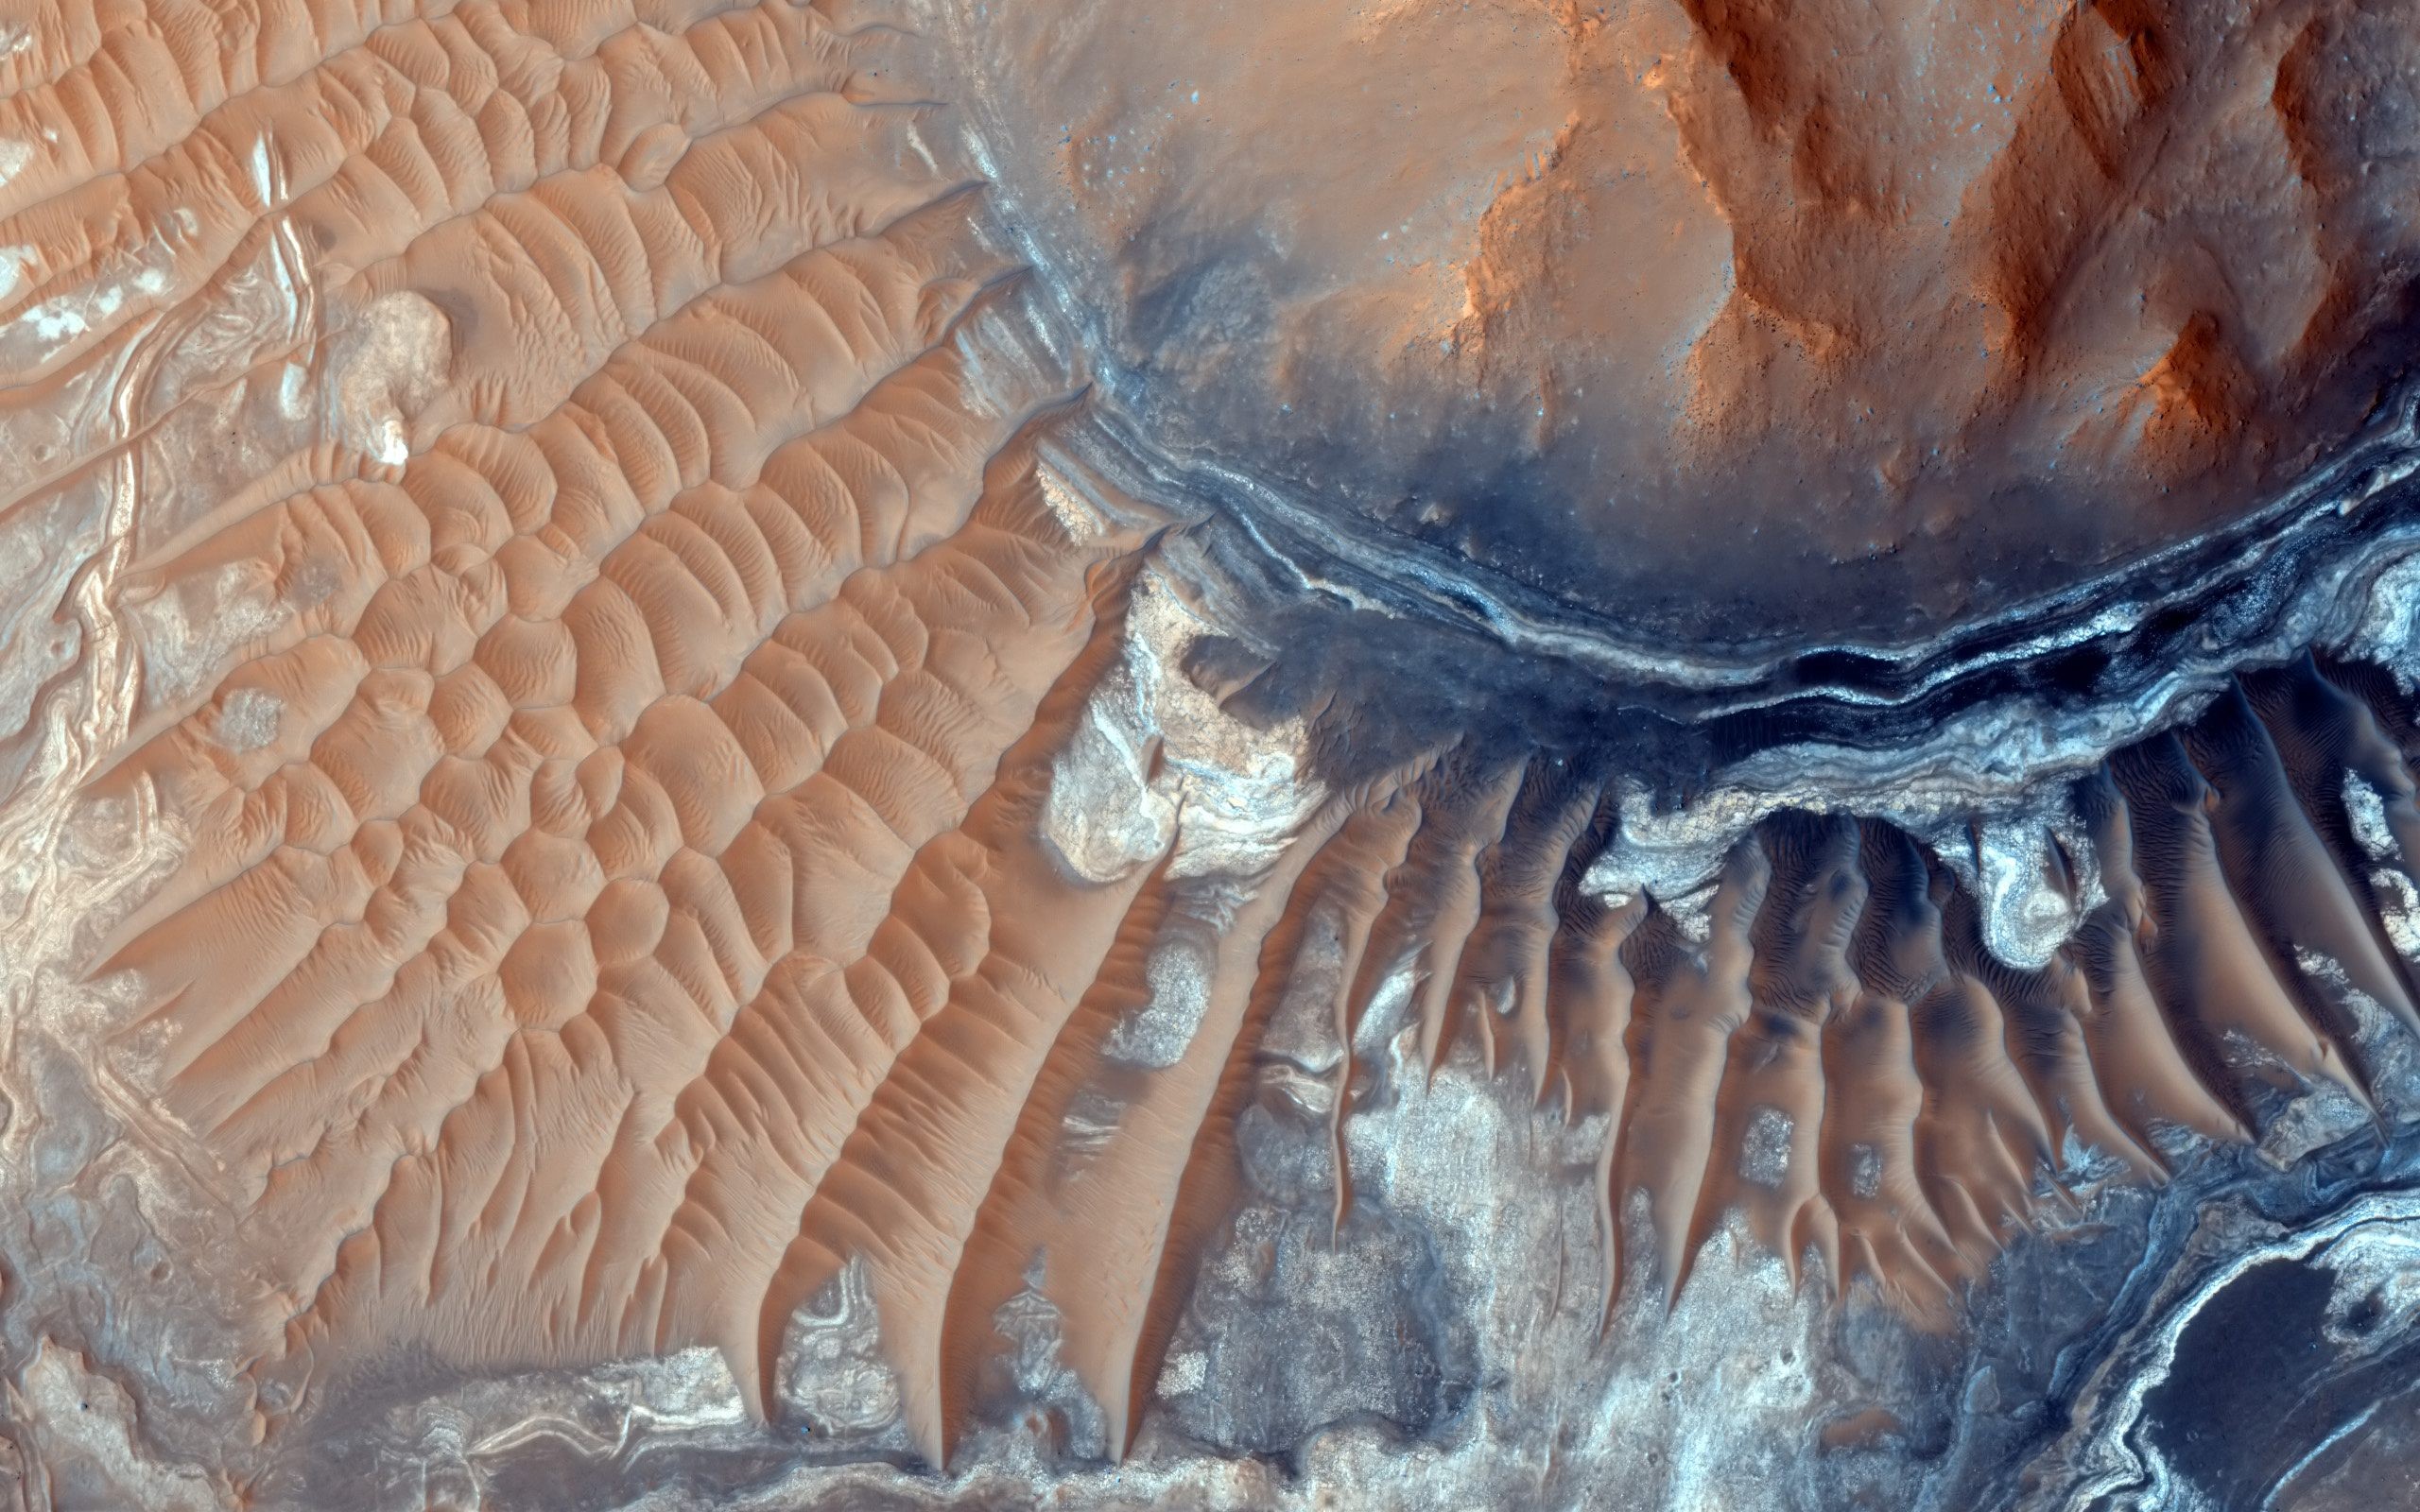 Mars Planet Landscape Aerial View 2560x1600